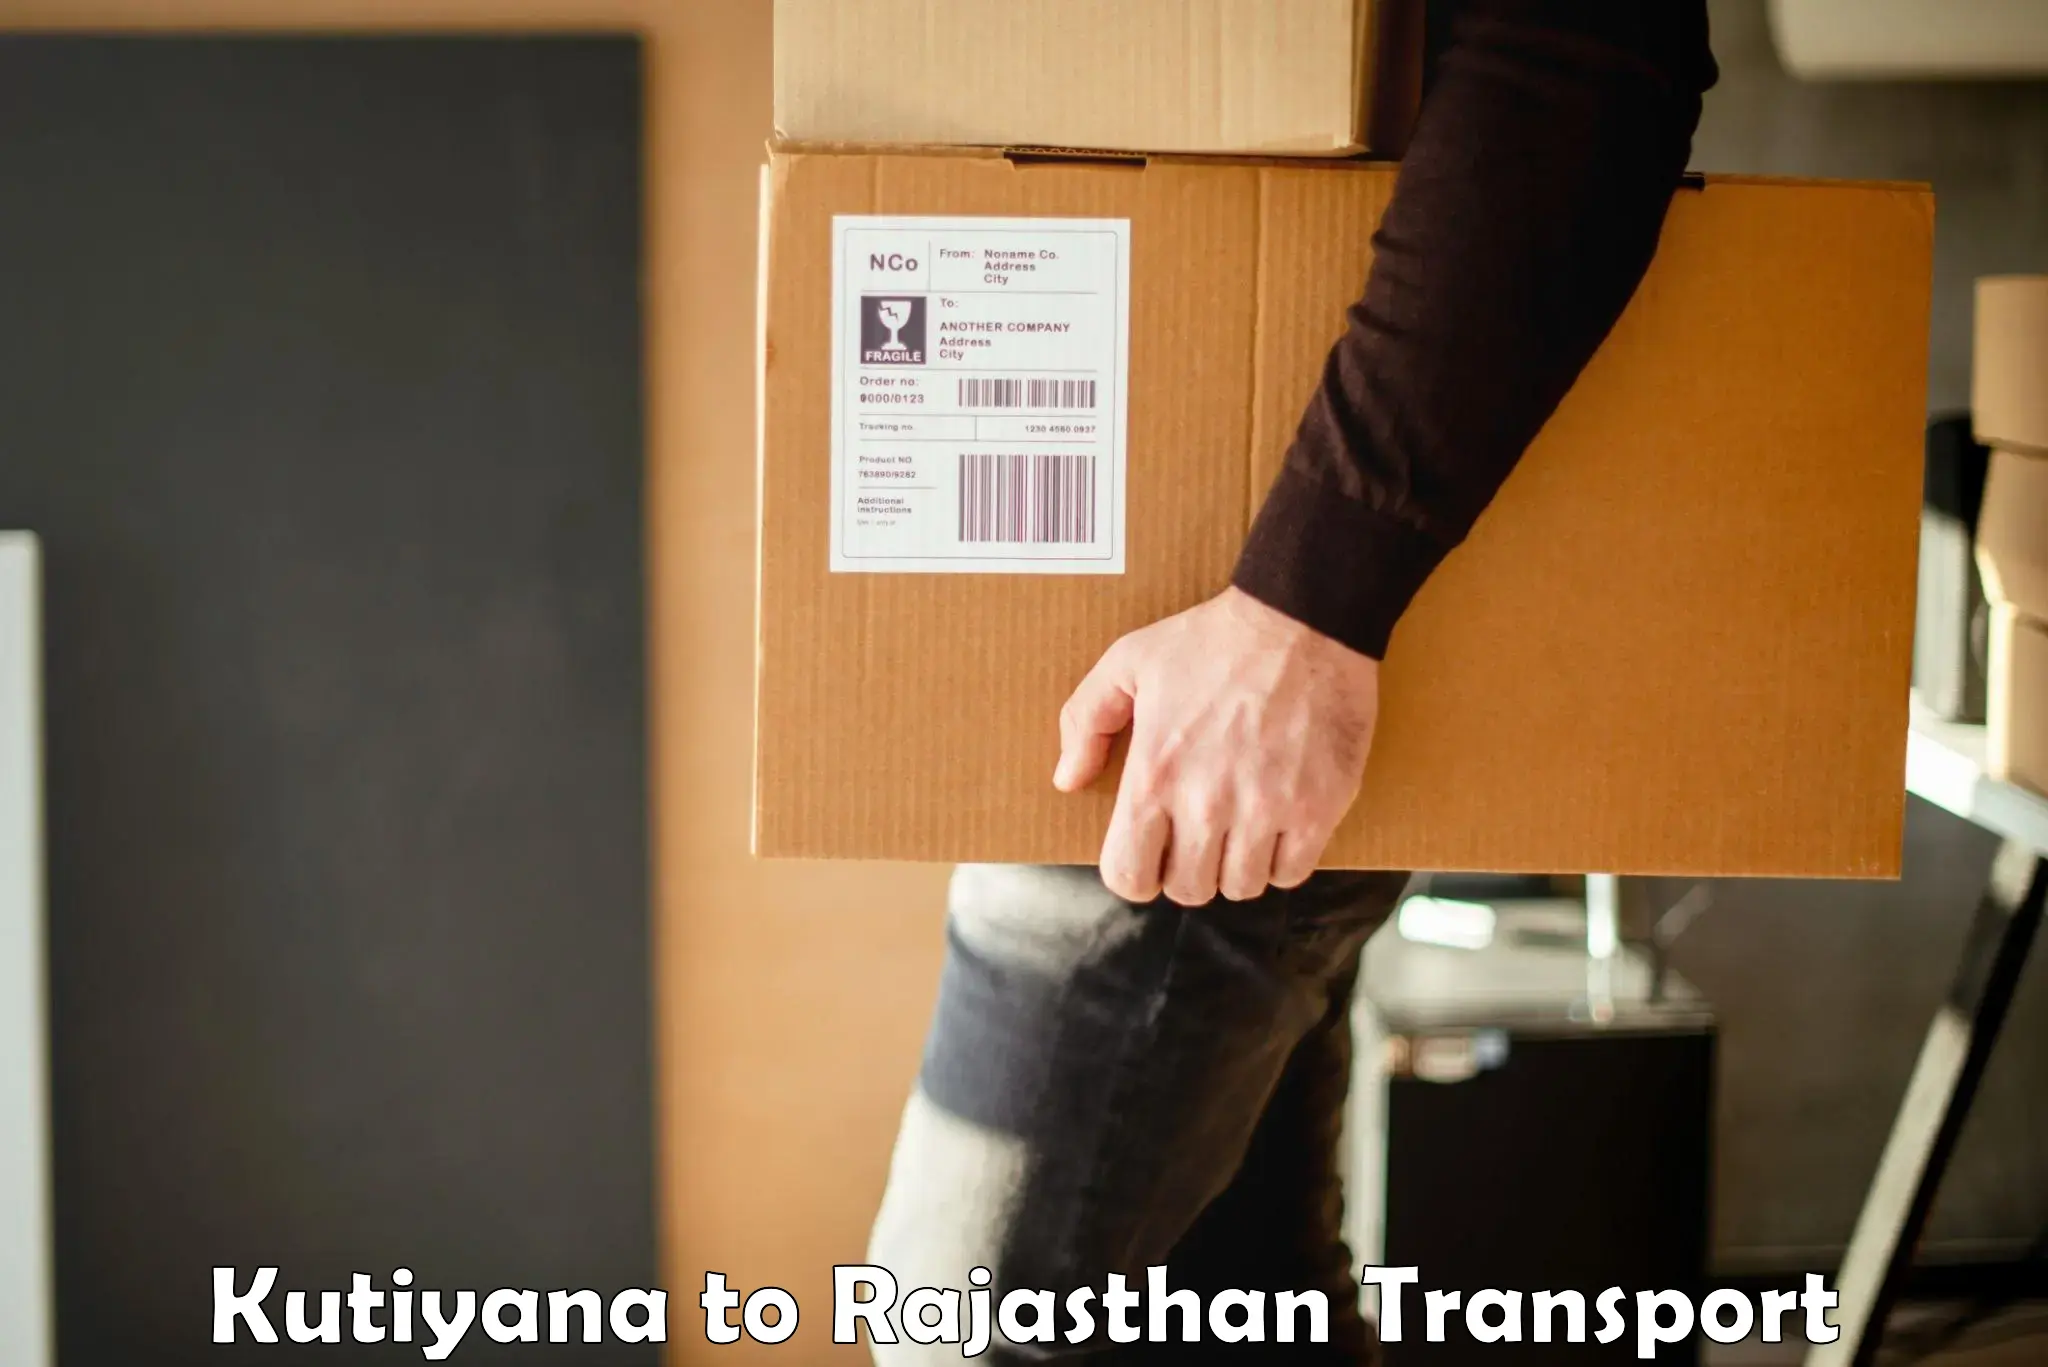 Furniture transport service Kutiyana to Jodhpur